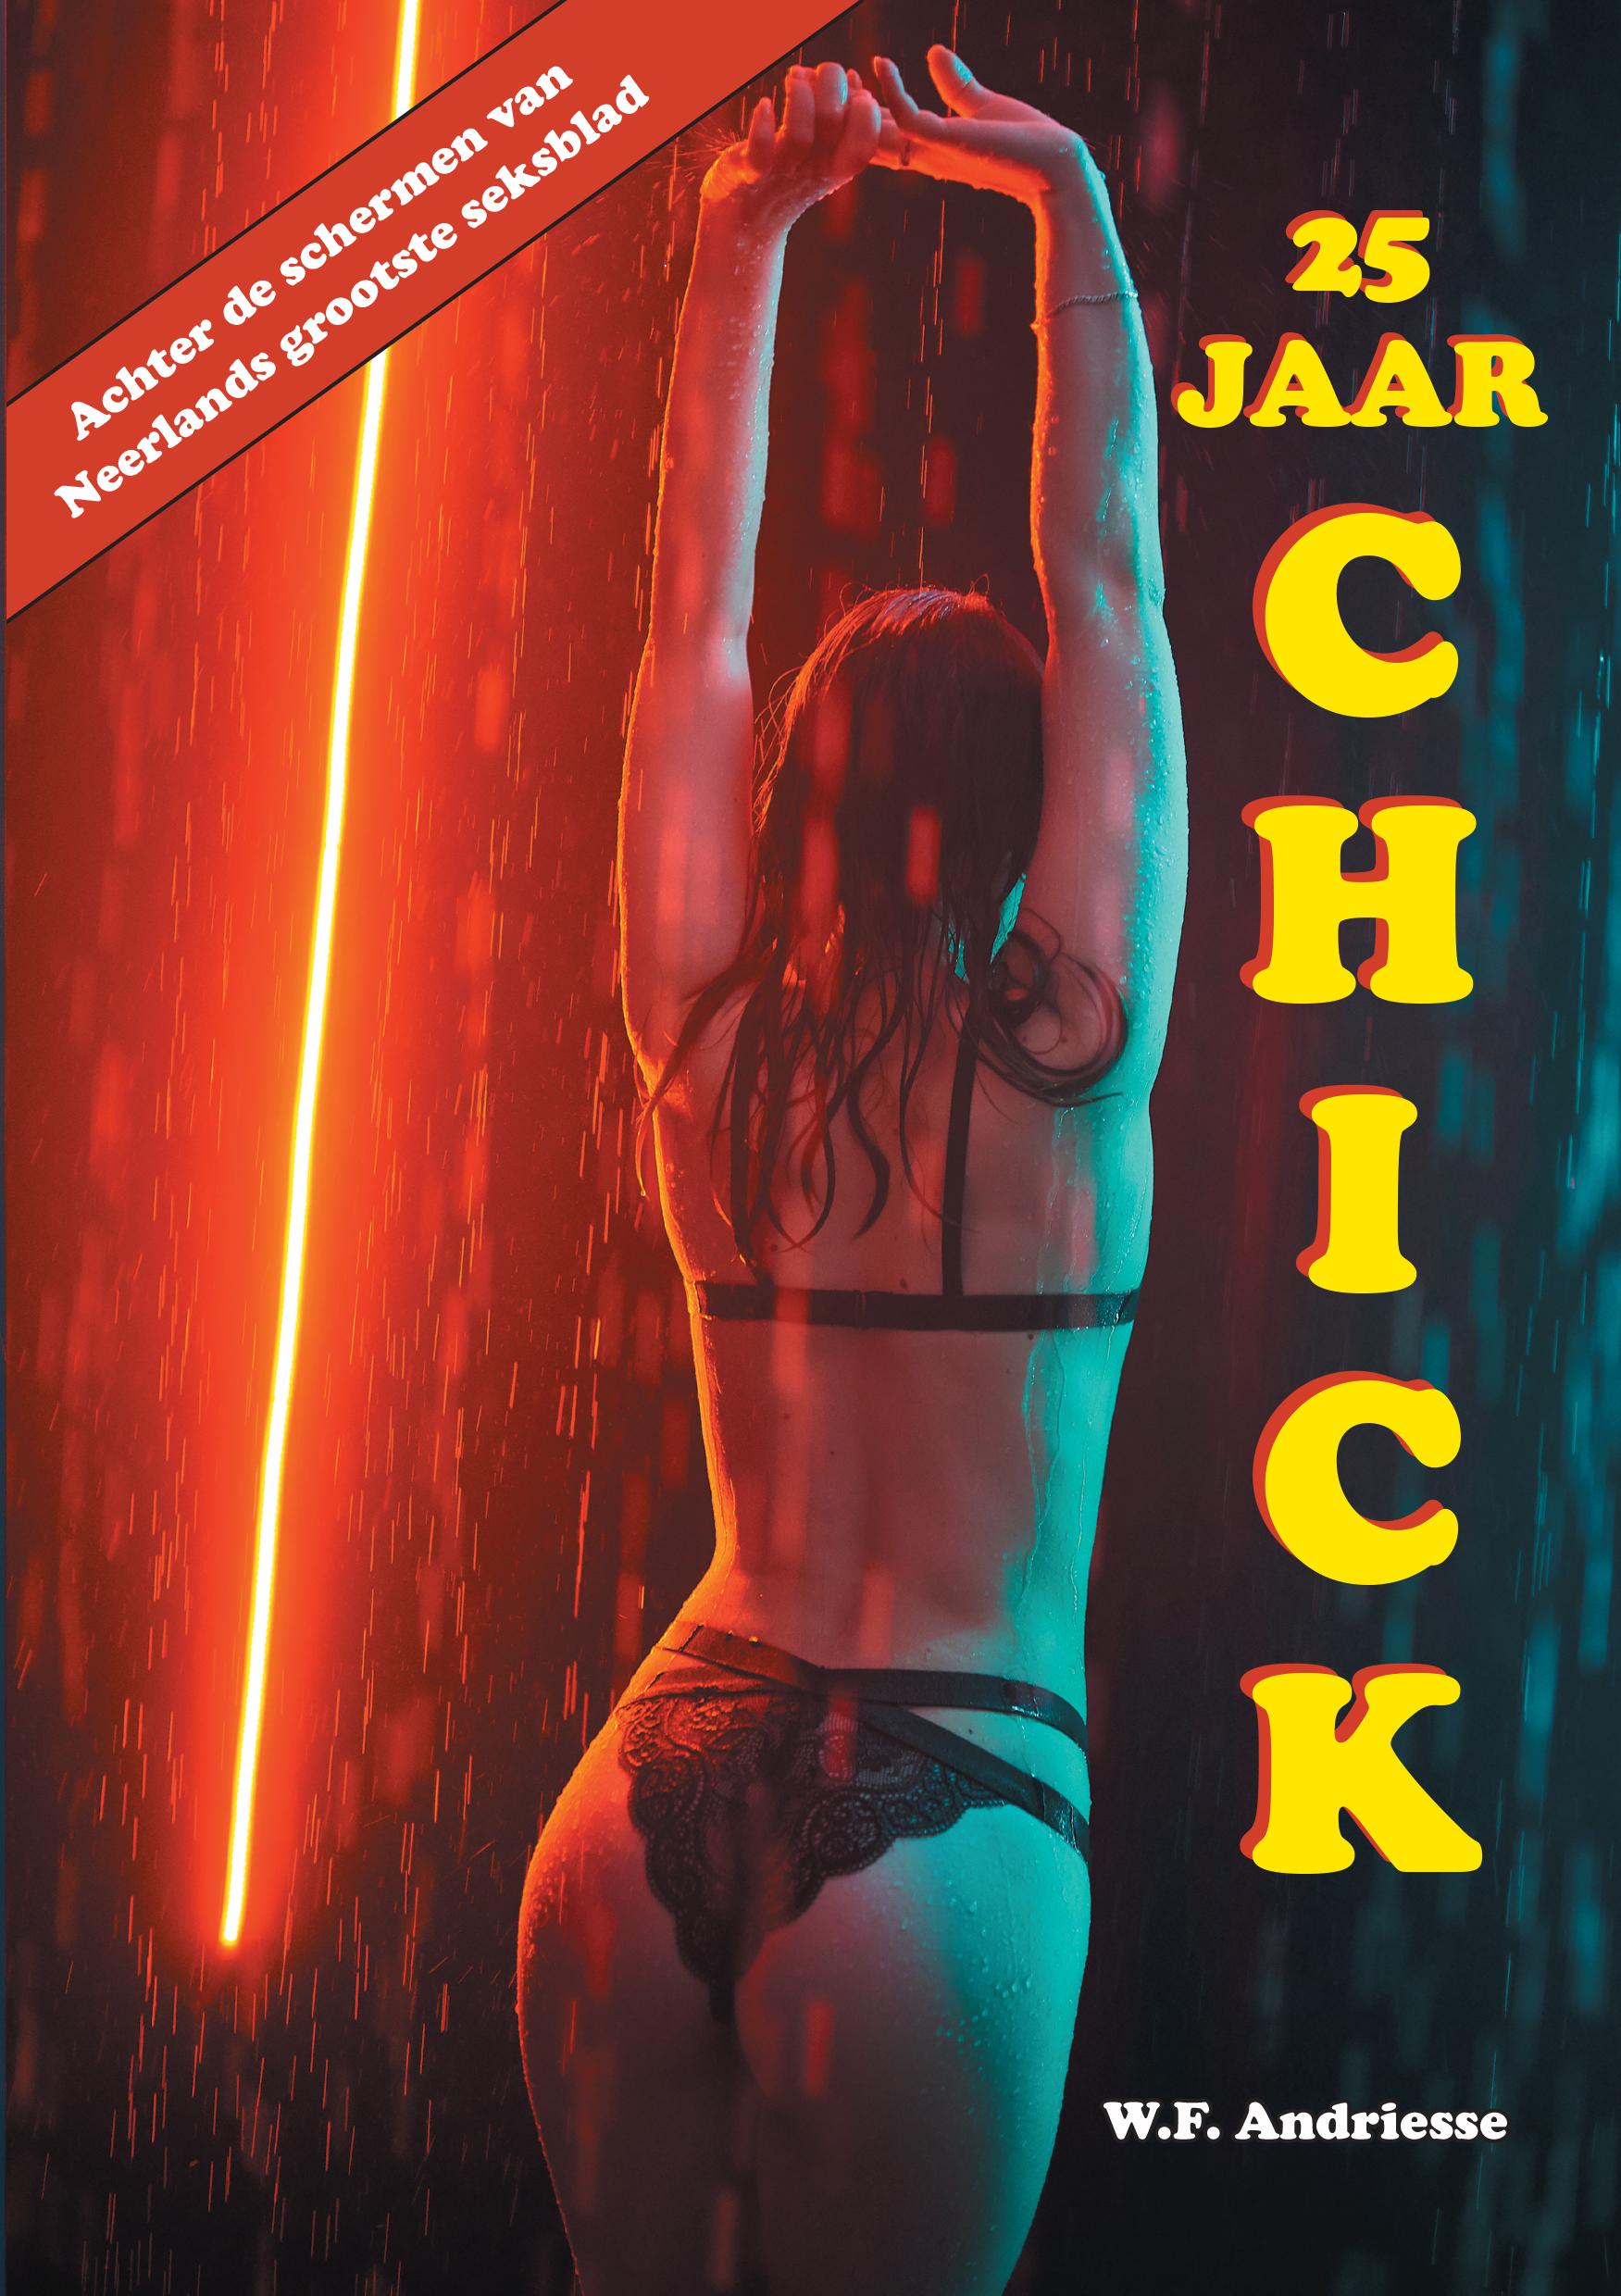 Schrijven was mijn hobby en ik was liefhebber van seks; Zaankanter Willem brengt een boek uit over het schrijven, filmen en fotograferen voor seksblad Chick Noordhollandsdagblad